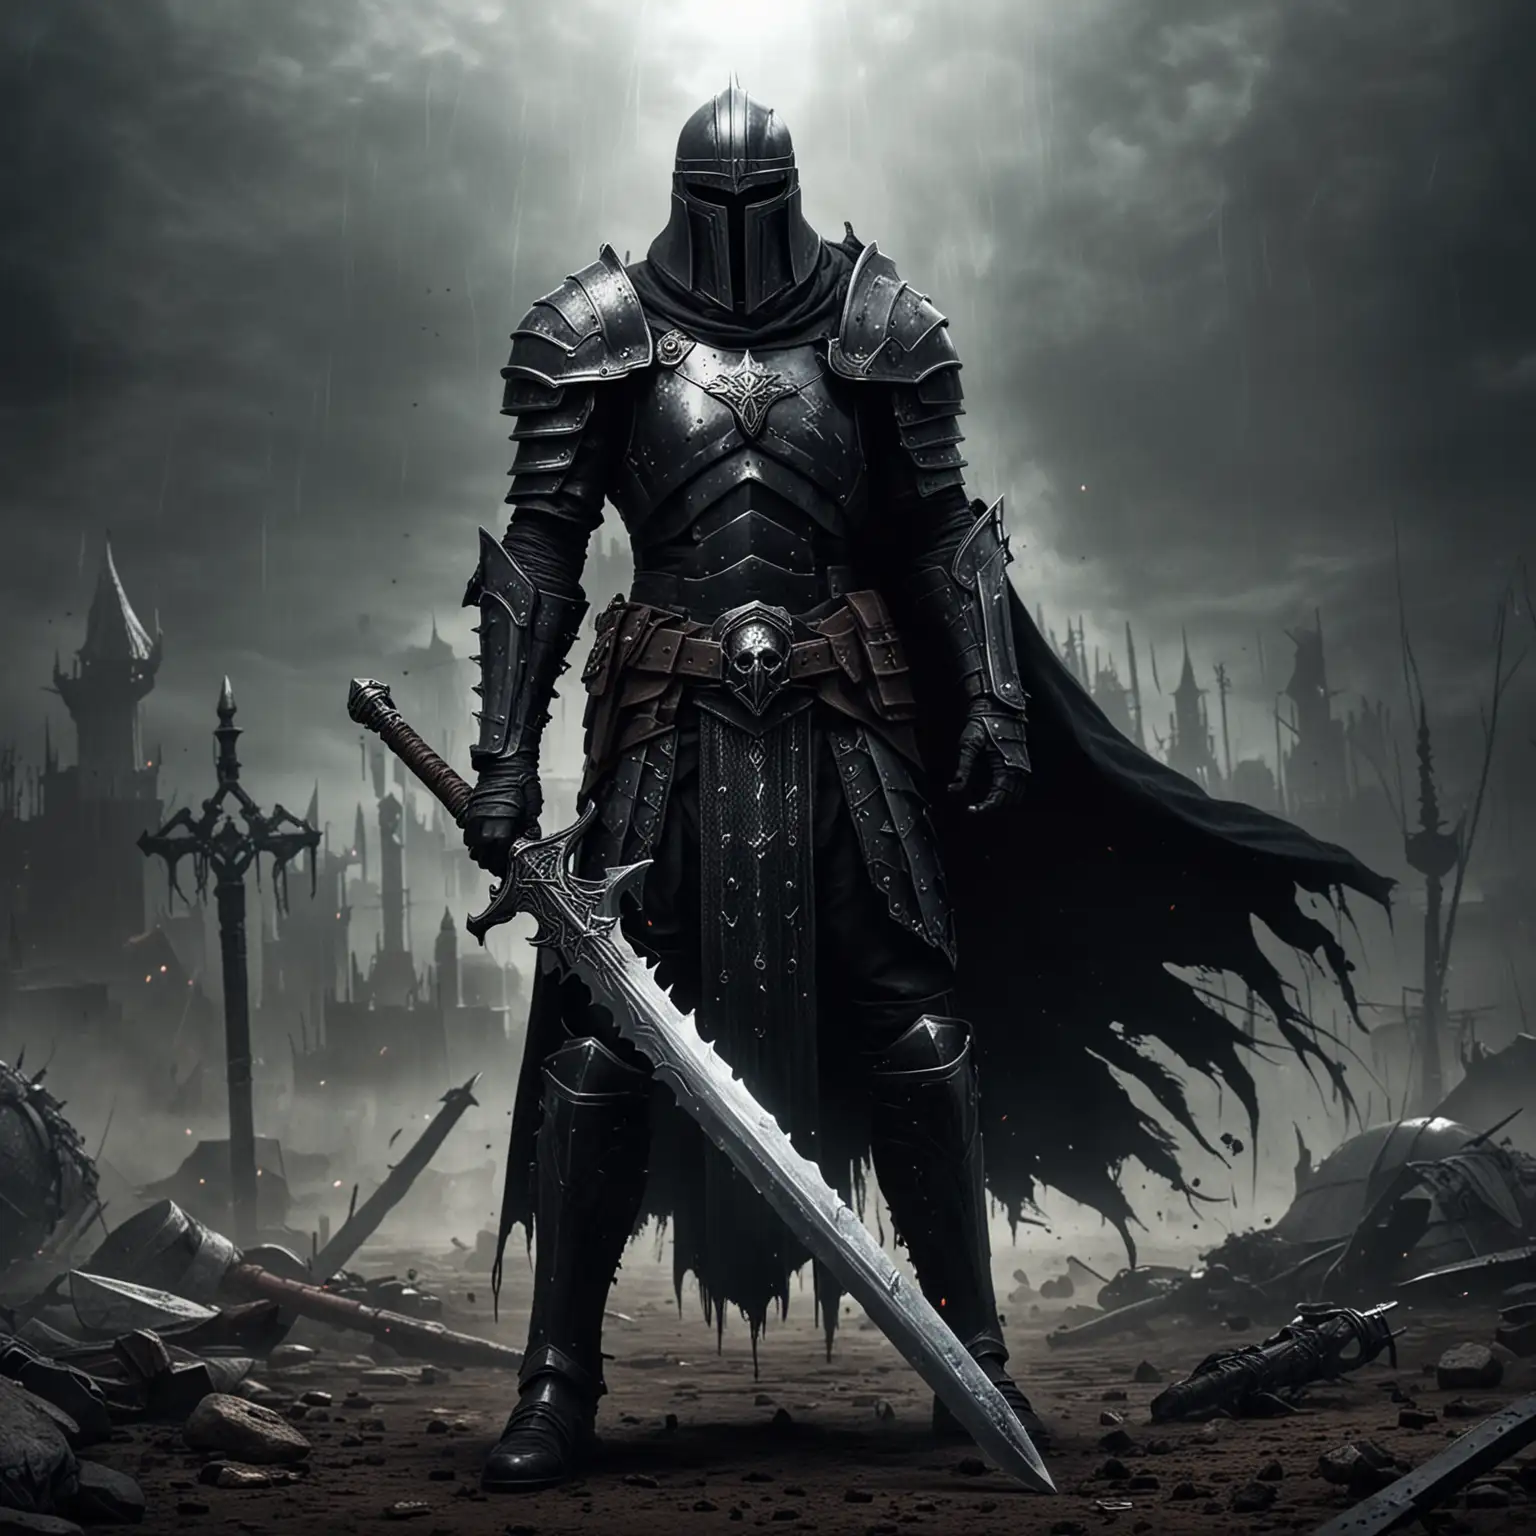 Armored Warrior with Big Sword on Gothic Battleground